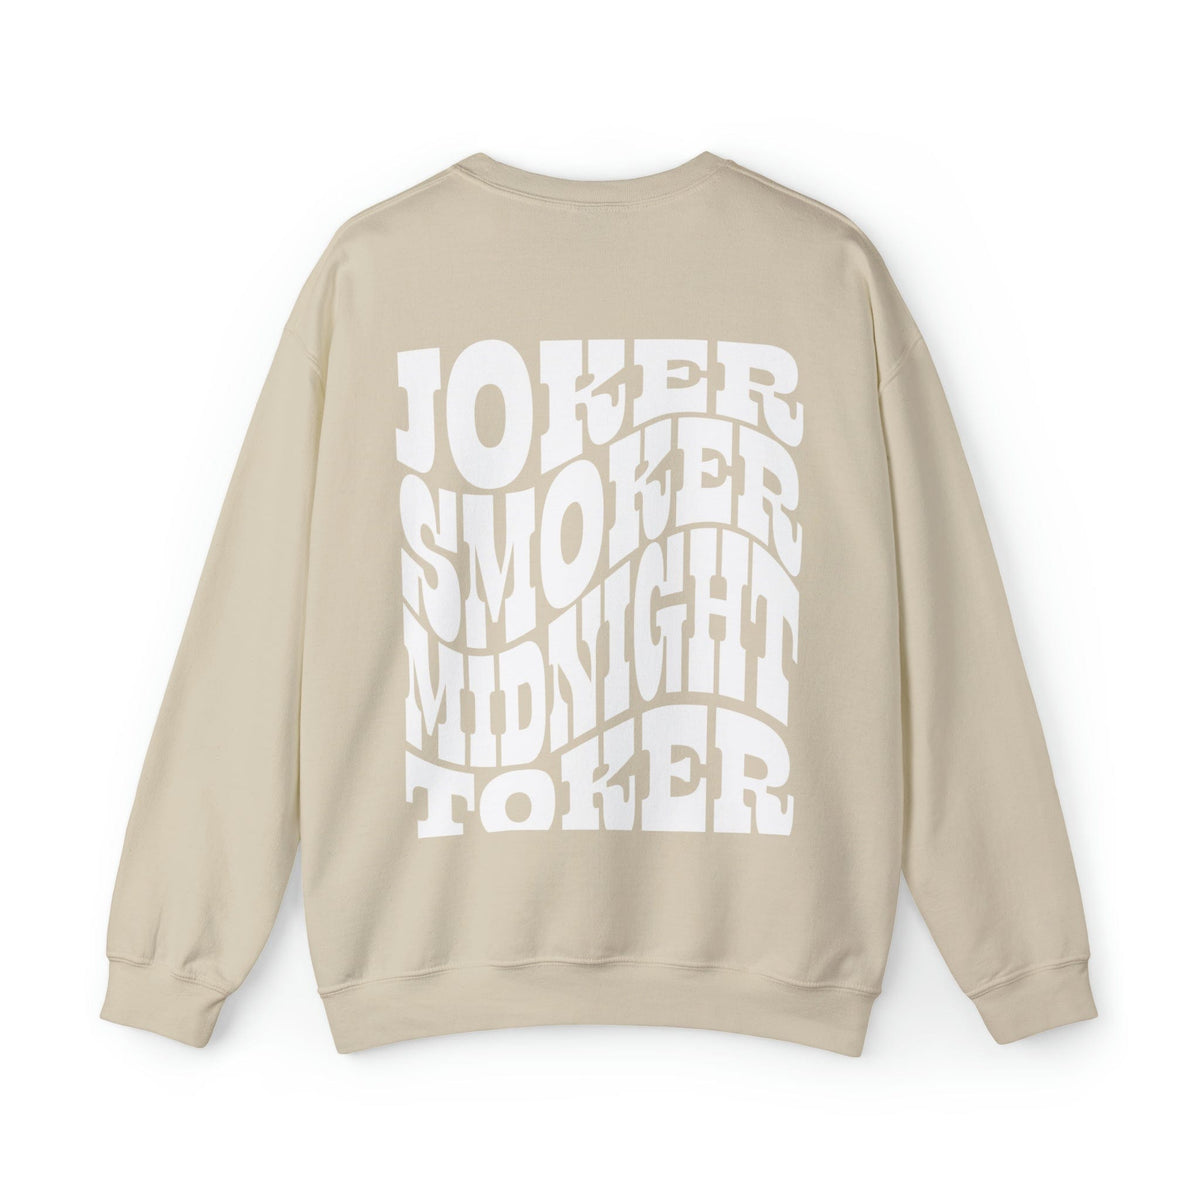 The Joker Crewneck | Rock Song Sweatshirt | Music Lovers Sweater Sweatshirt TheFringeCultureCollective